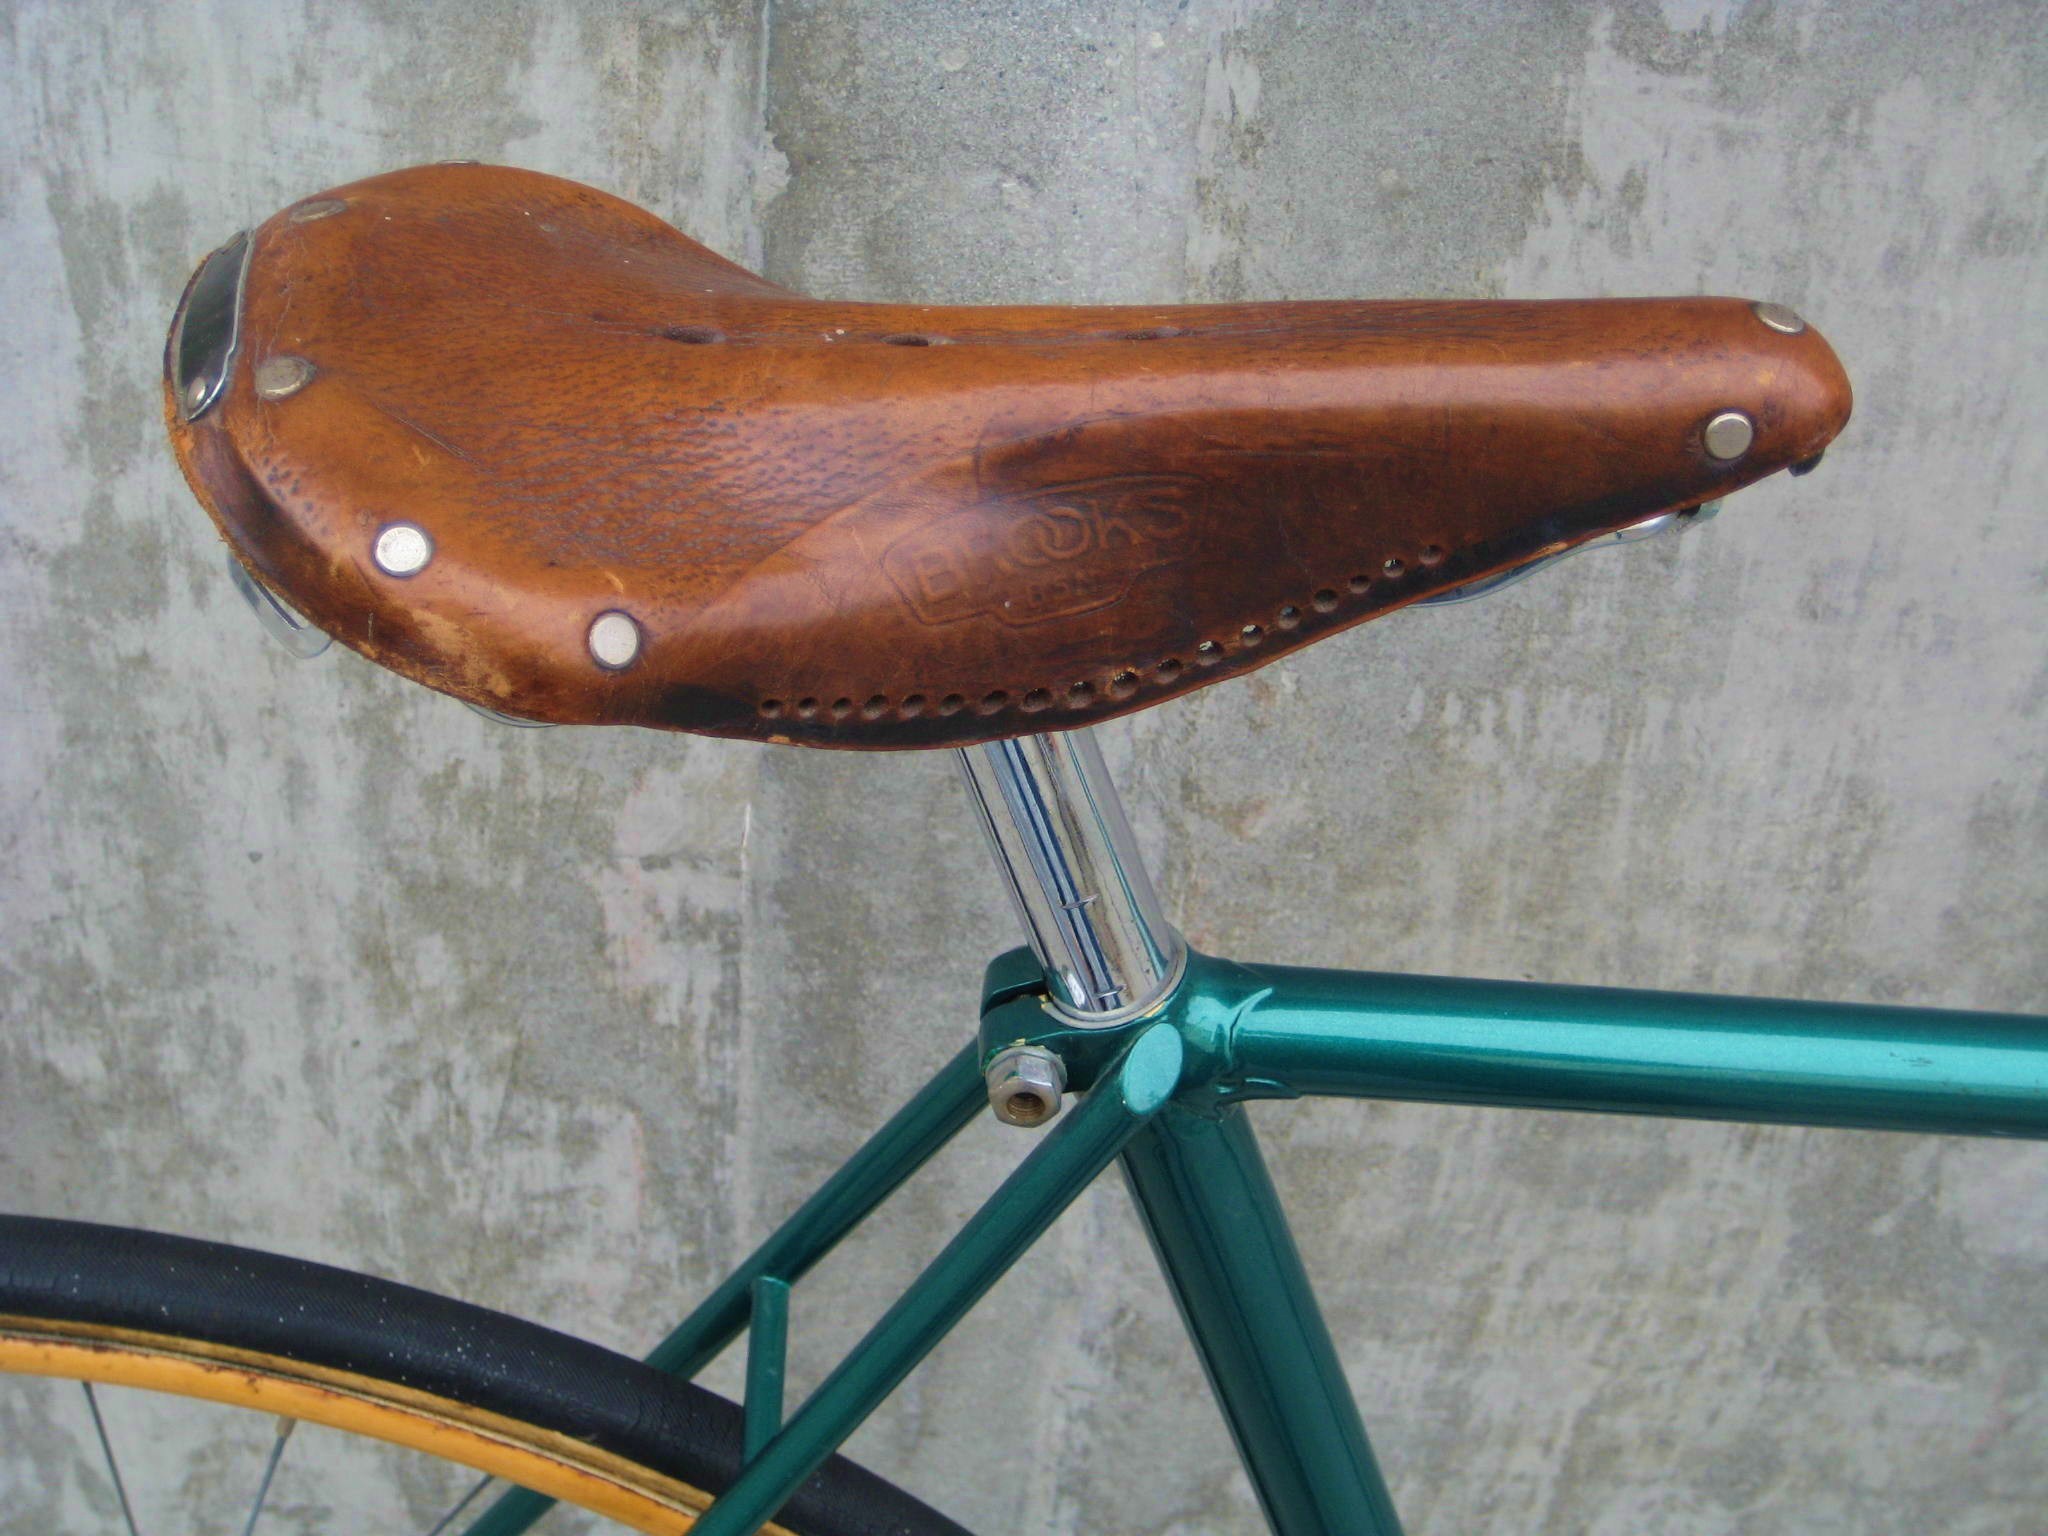 used brooks saddle